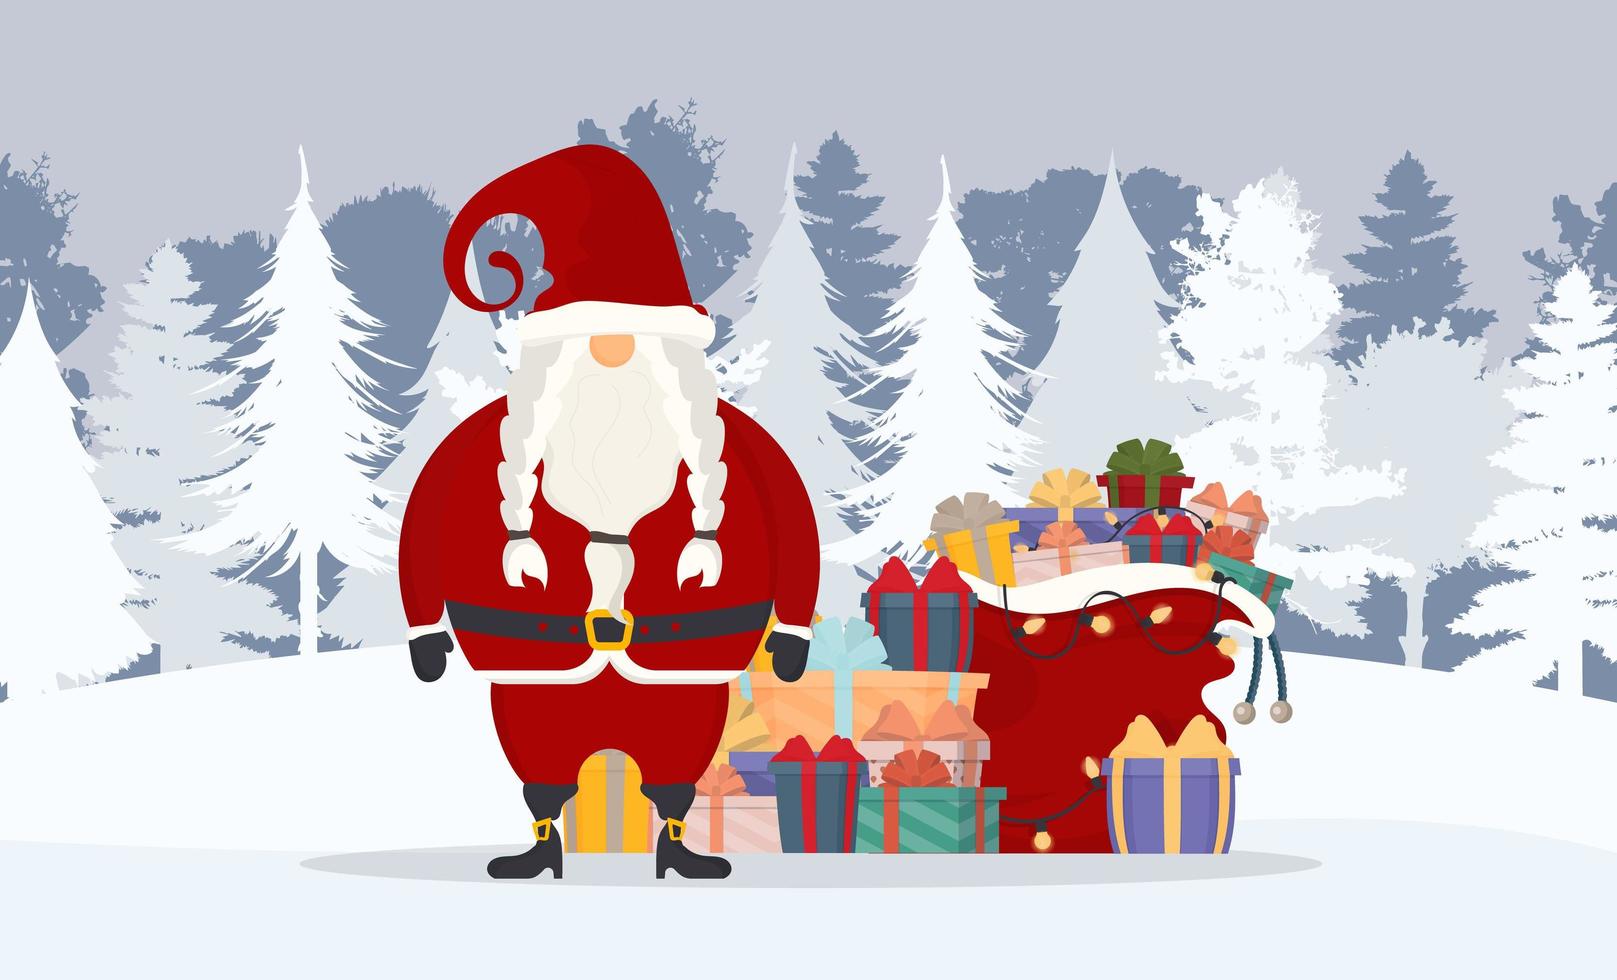 Weihnachtsmann im Winterwald. ein Berg von Geschenken, eine rote Tasche, ein alter Mann mit weißem Bart im roten Anzug. Vektor